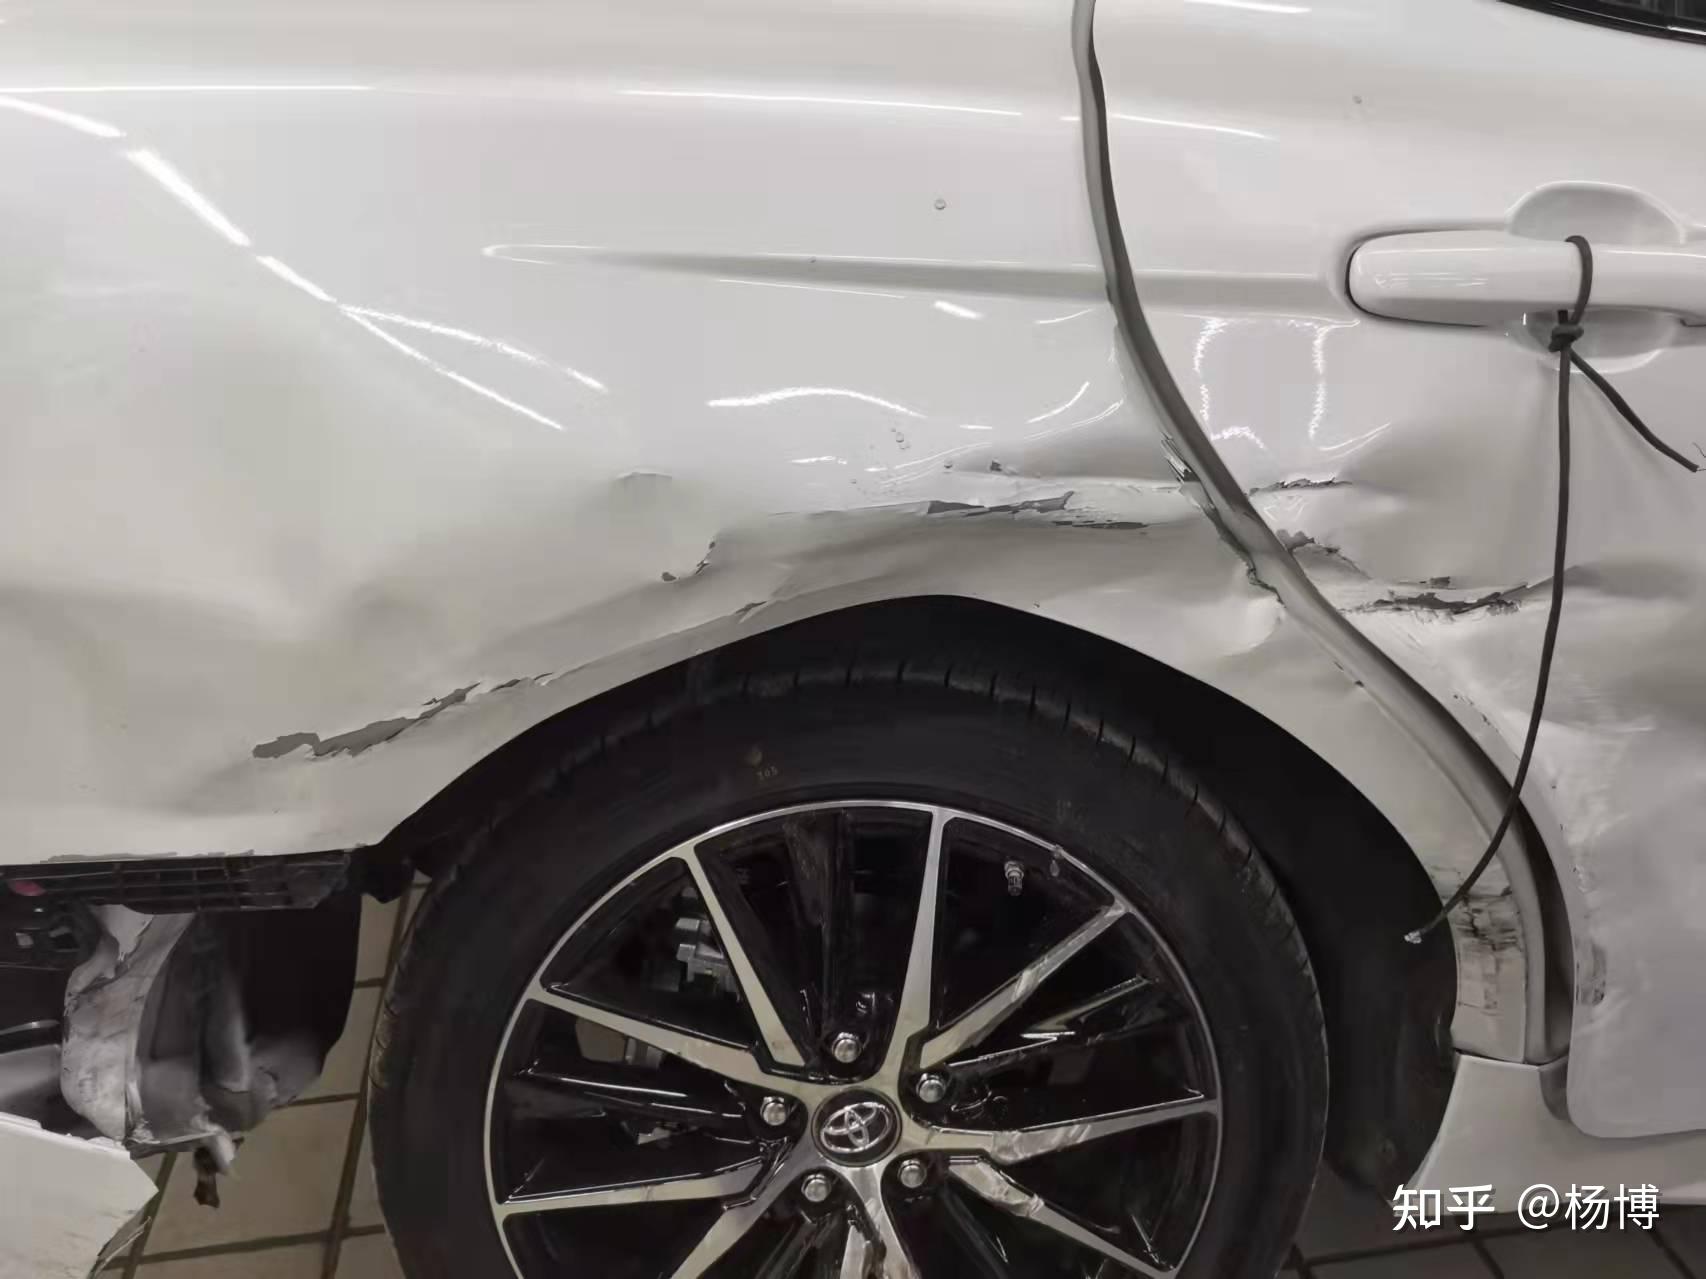 修复案例-凹陷修复案例-前翼子板修复效果-北京圣手汽车装饰服务有限公司